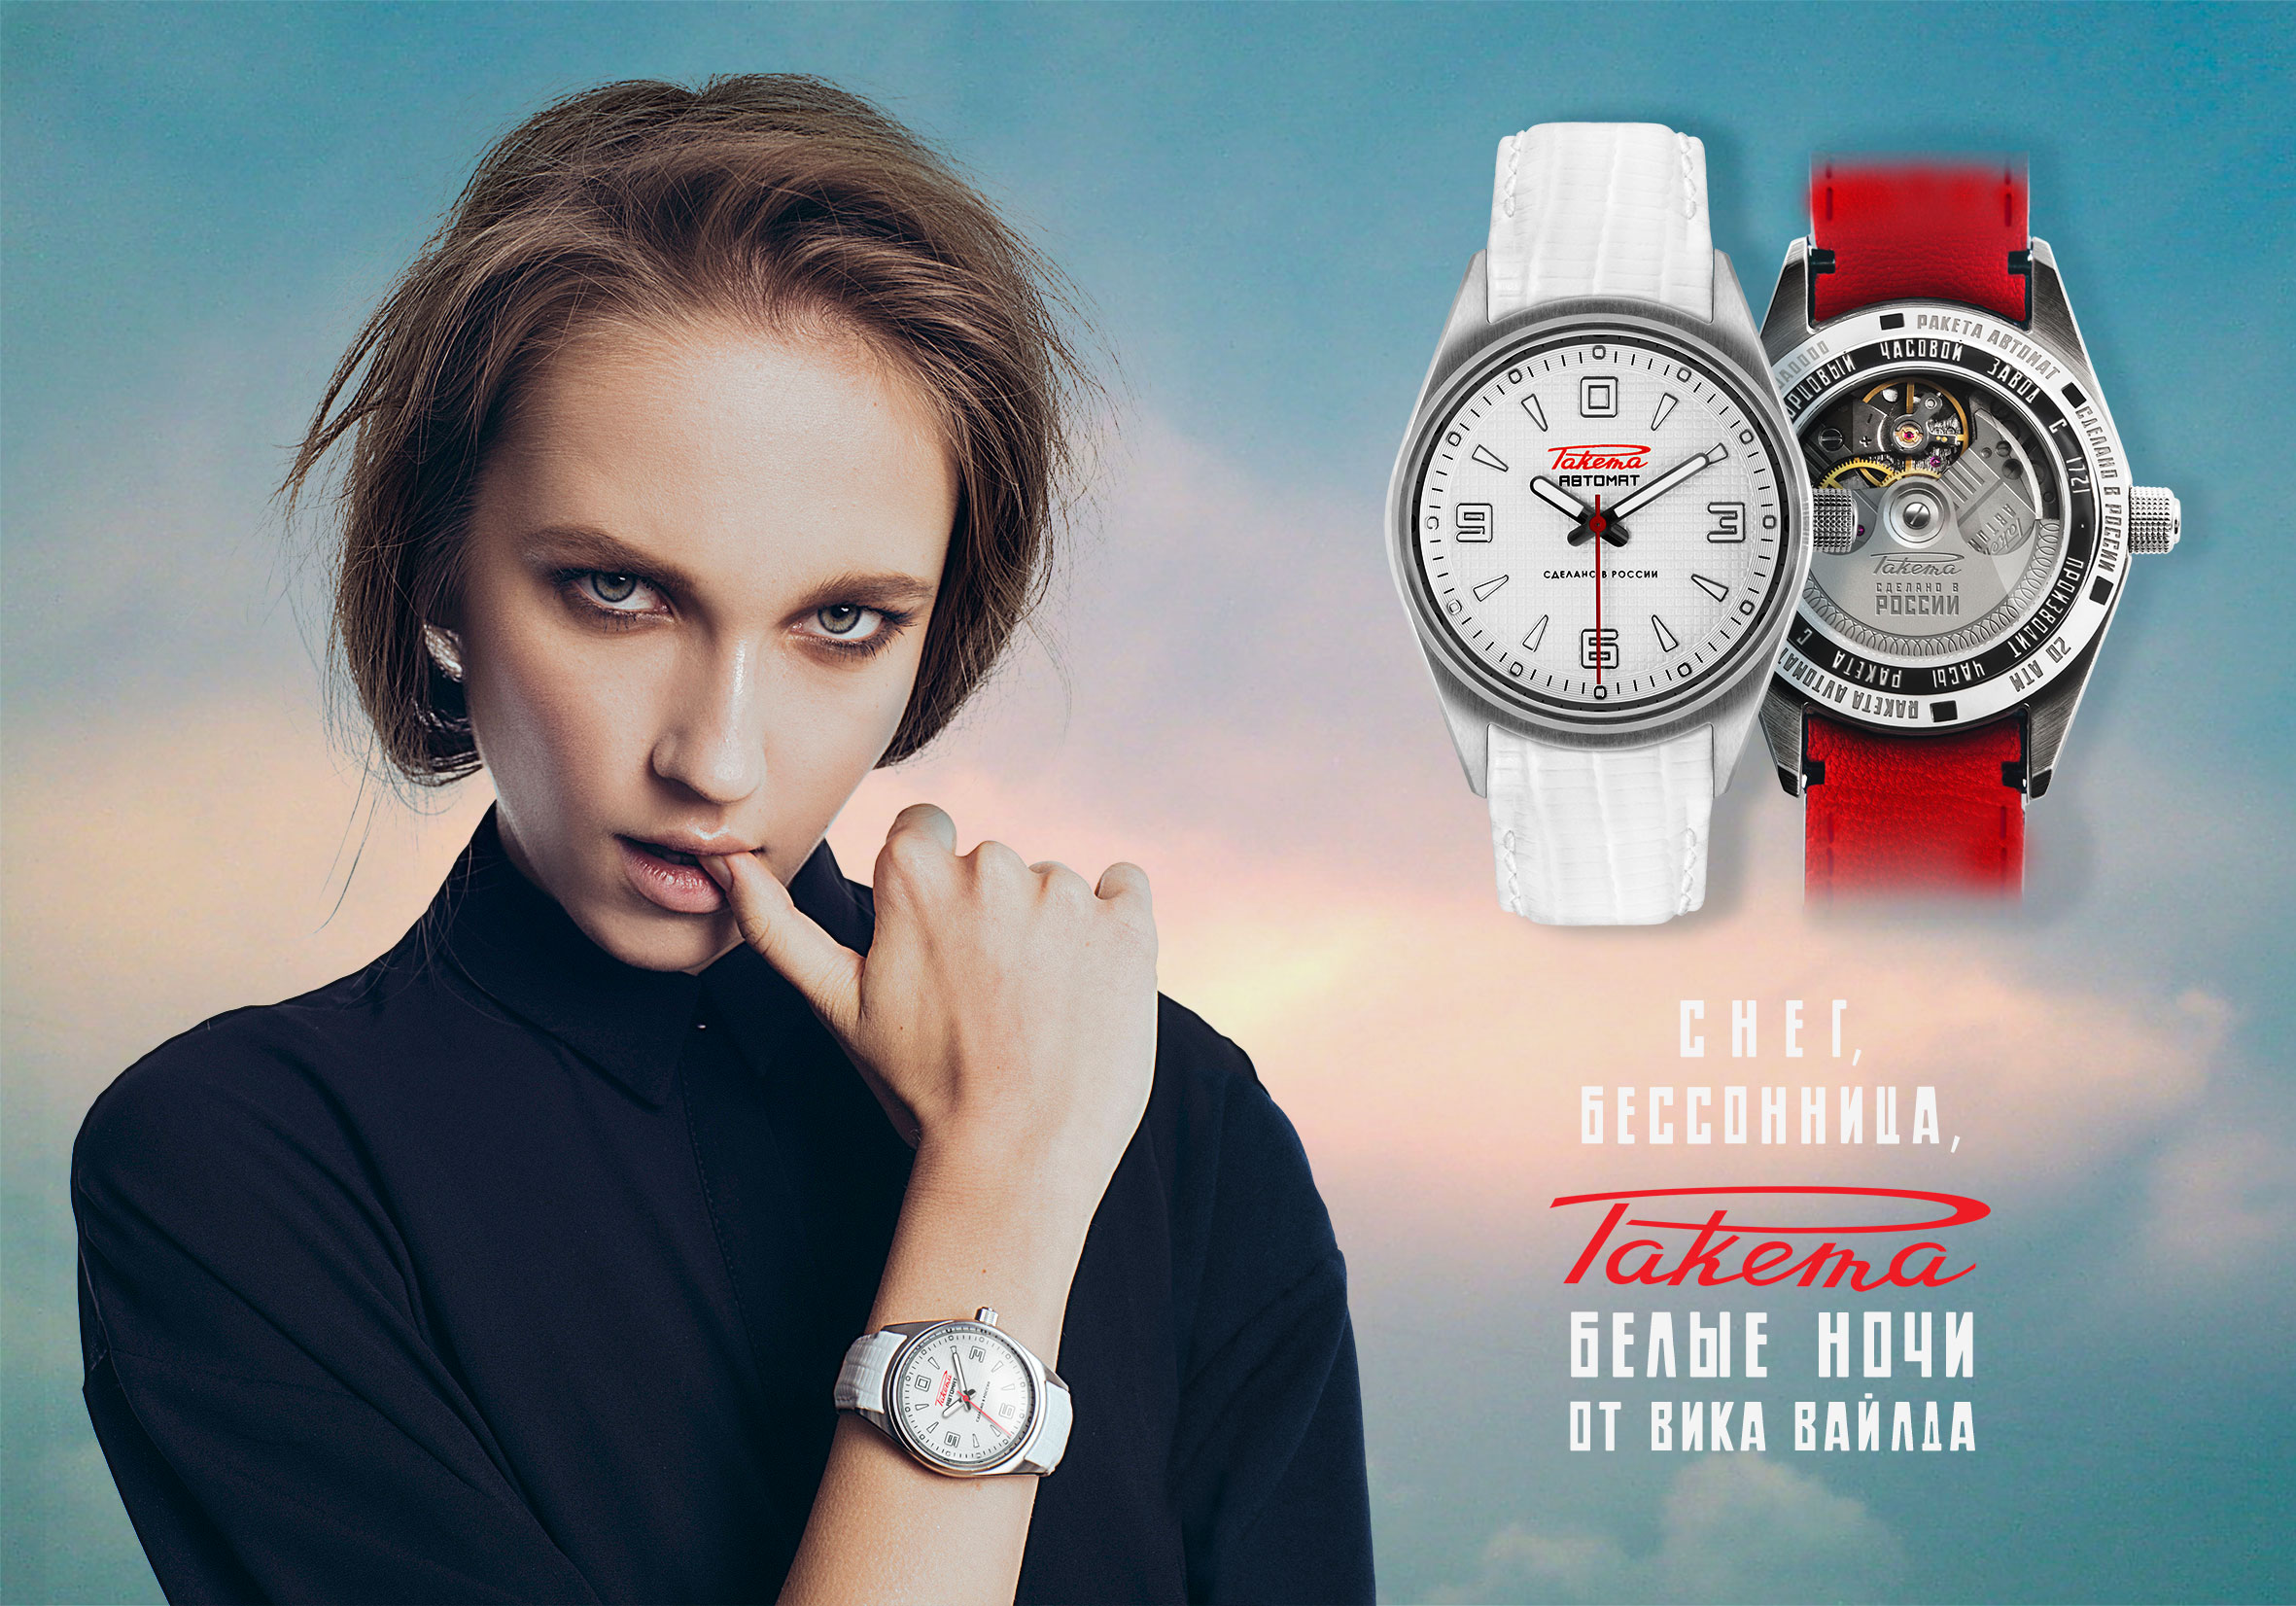 Наручные часы реклама. Реклама часов. Часы реклама. Швейцарские часы реклама.